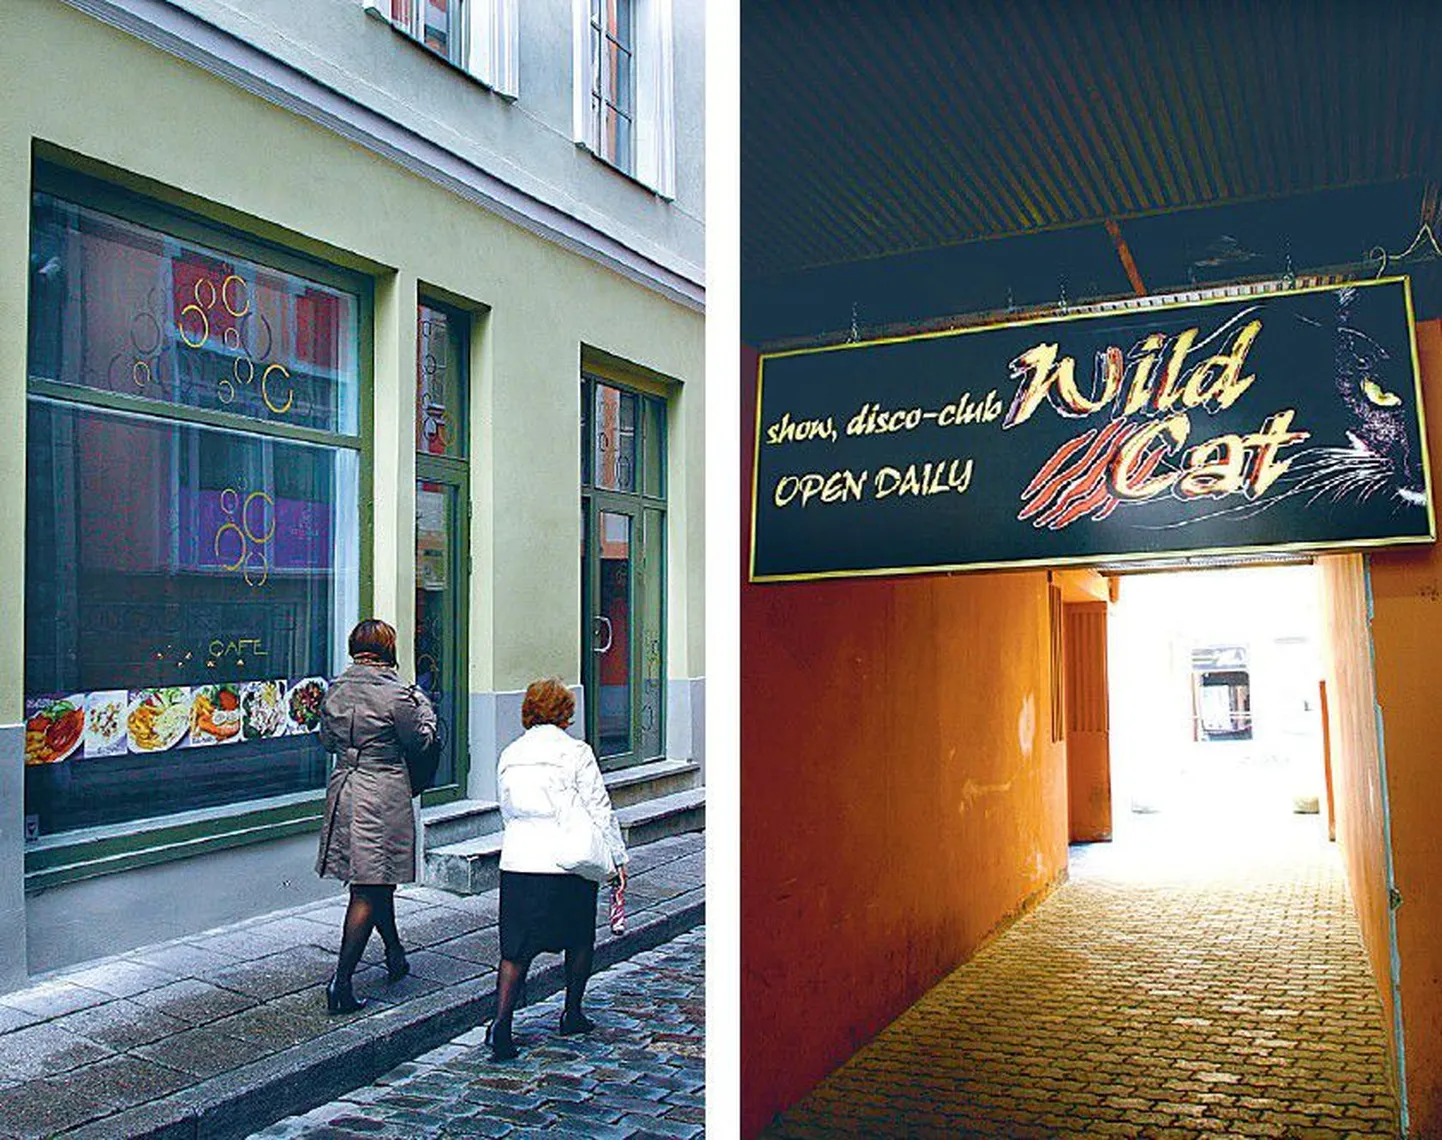 Krediitkaardipettused pandi toime Tallinna vanalinna kahes striptiisibaaris – Väike-Karja tänaval asuvas Cafe Courage’is (vasakul) ja Viru tänava Wild Catis.